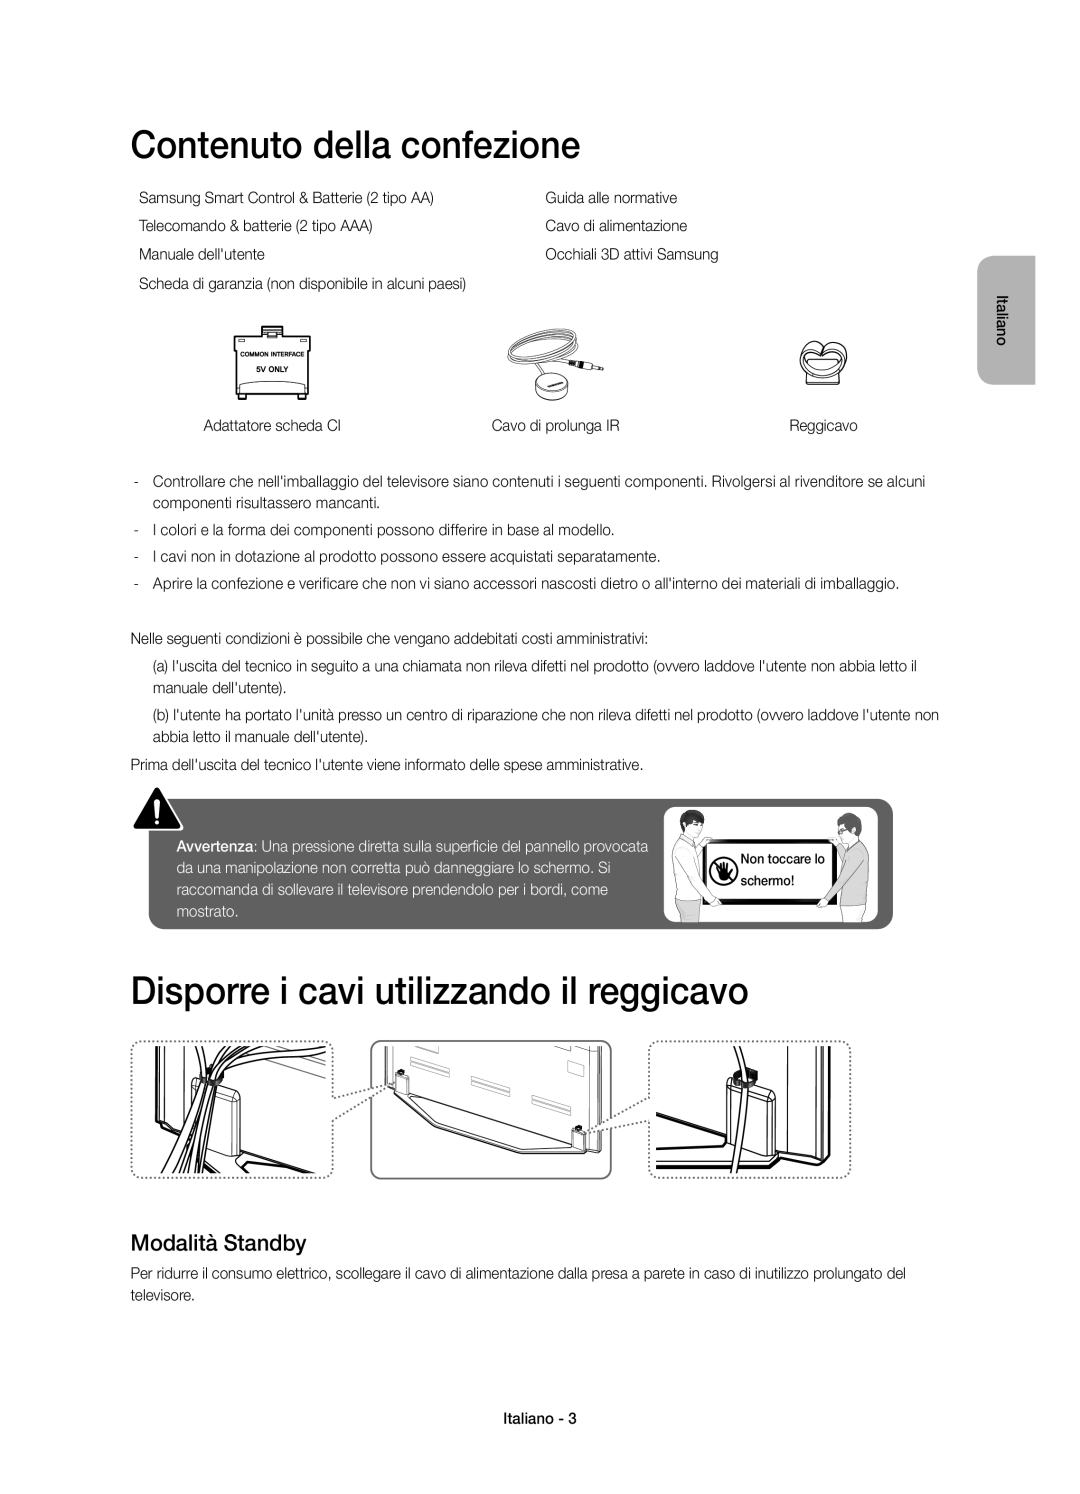 Samsung UE46H7000SZXZT manual Contenuto della confezione, Disporre i cavi utilizzando il reggicavo, Modalità Standby 